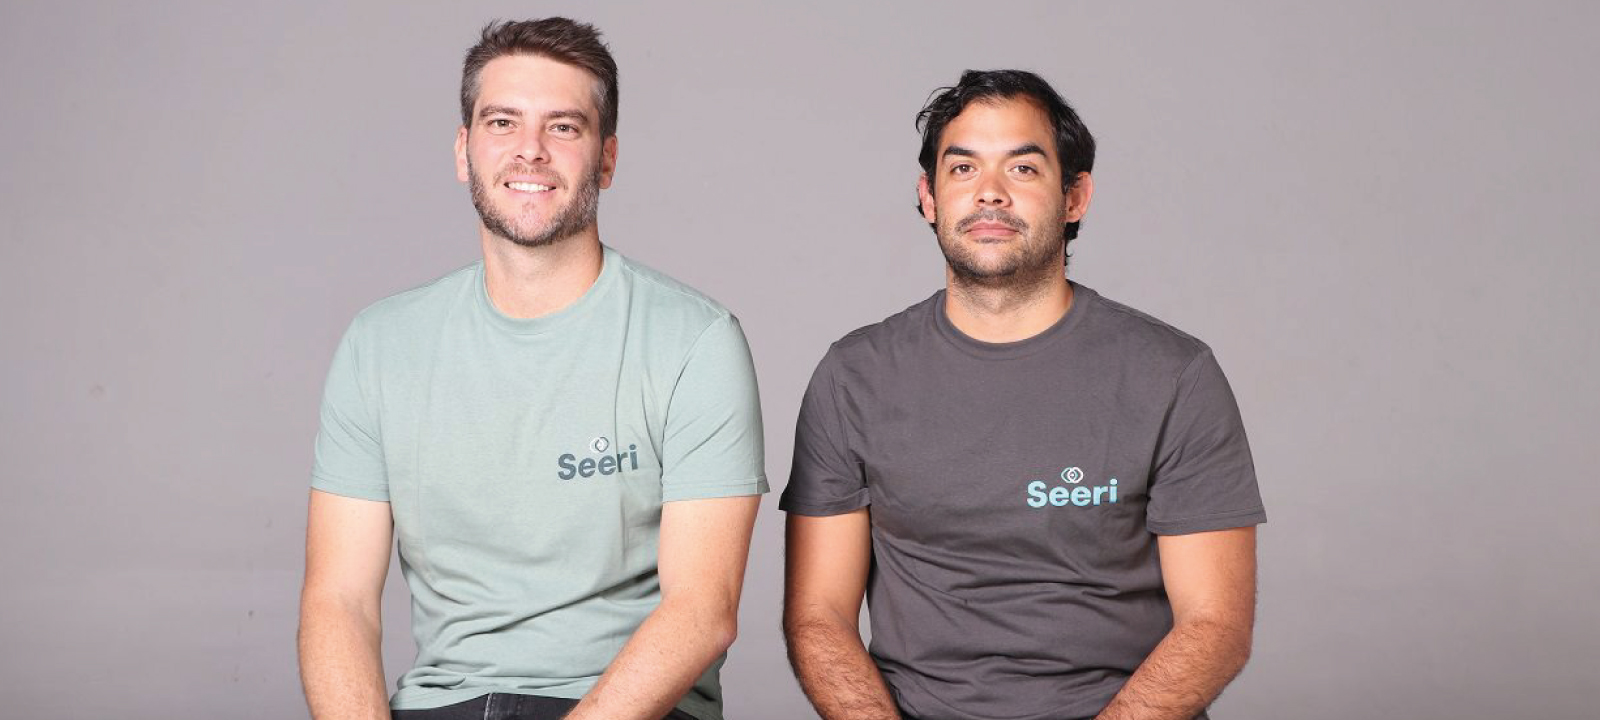 Seeri, la app que apoya a los vendedores independientes 